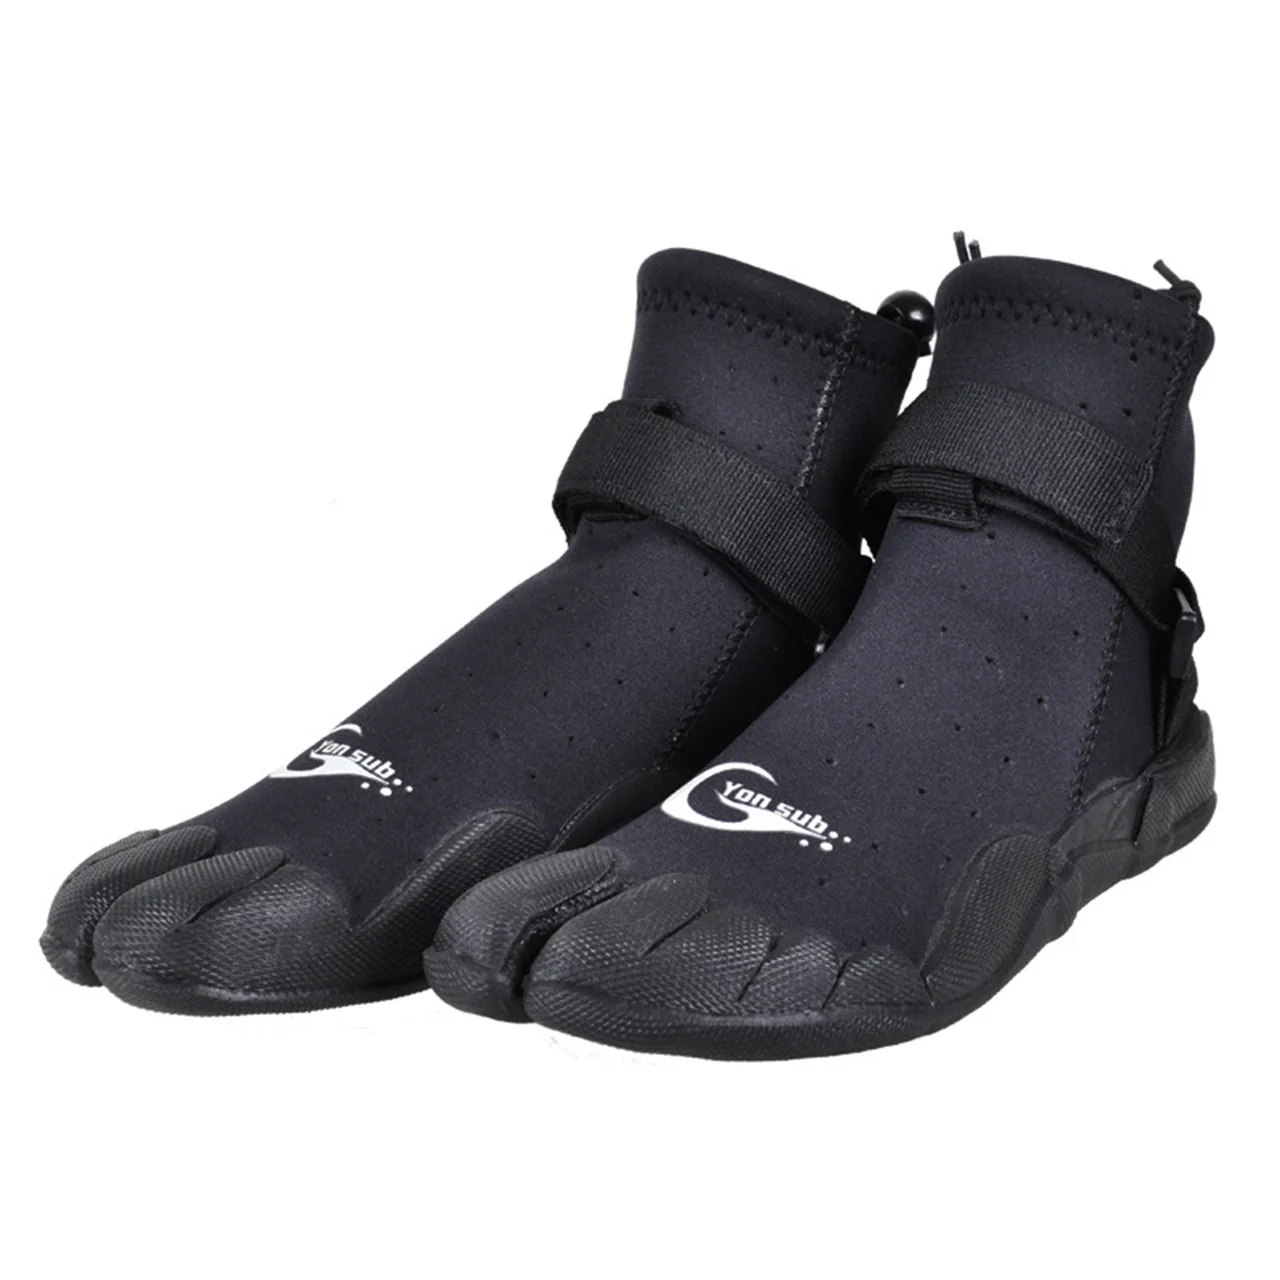 3mm-neoprene-diving-boots-men-women-snorkeling-windsurfing-split-toe-shoes-wear-resistant-rock-fishing-river-trekking-shoes